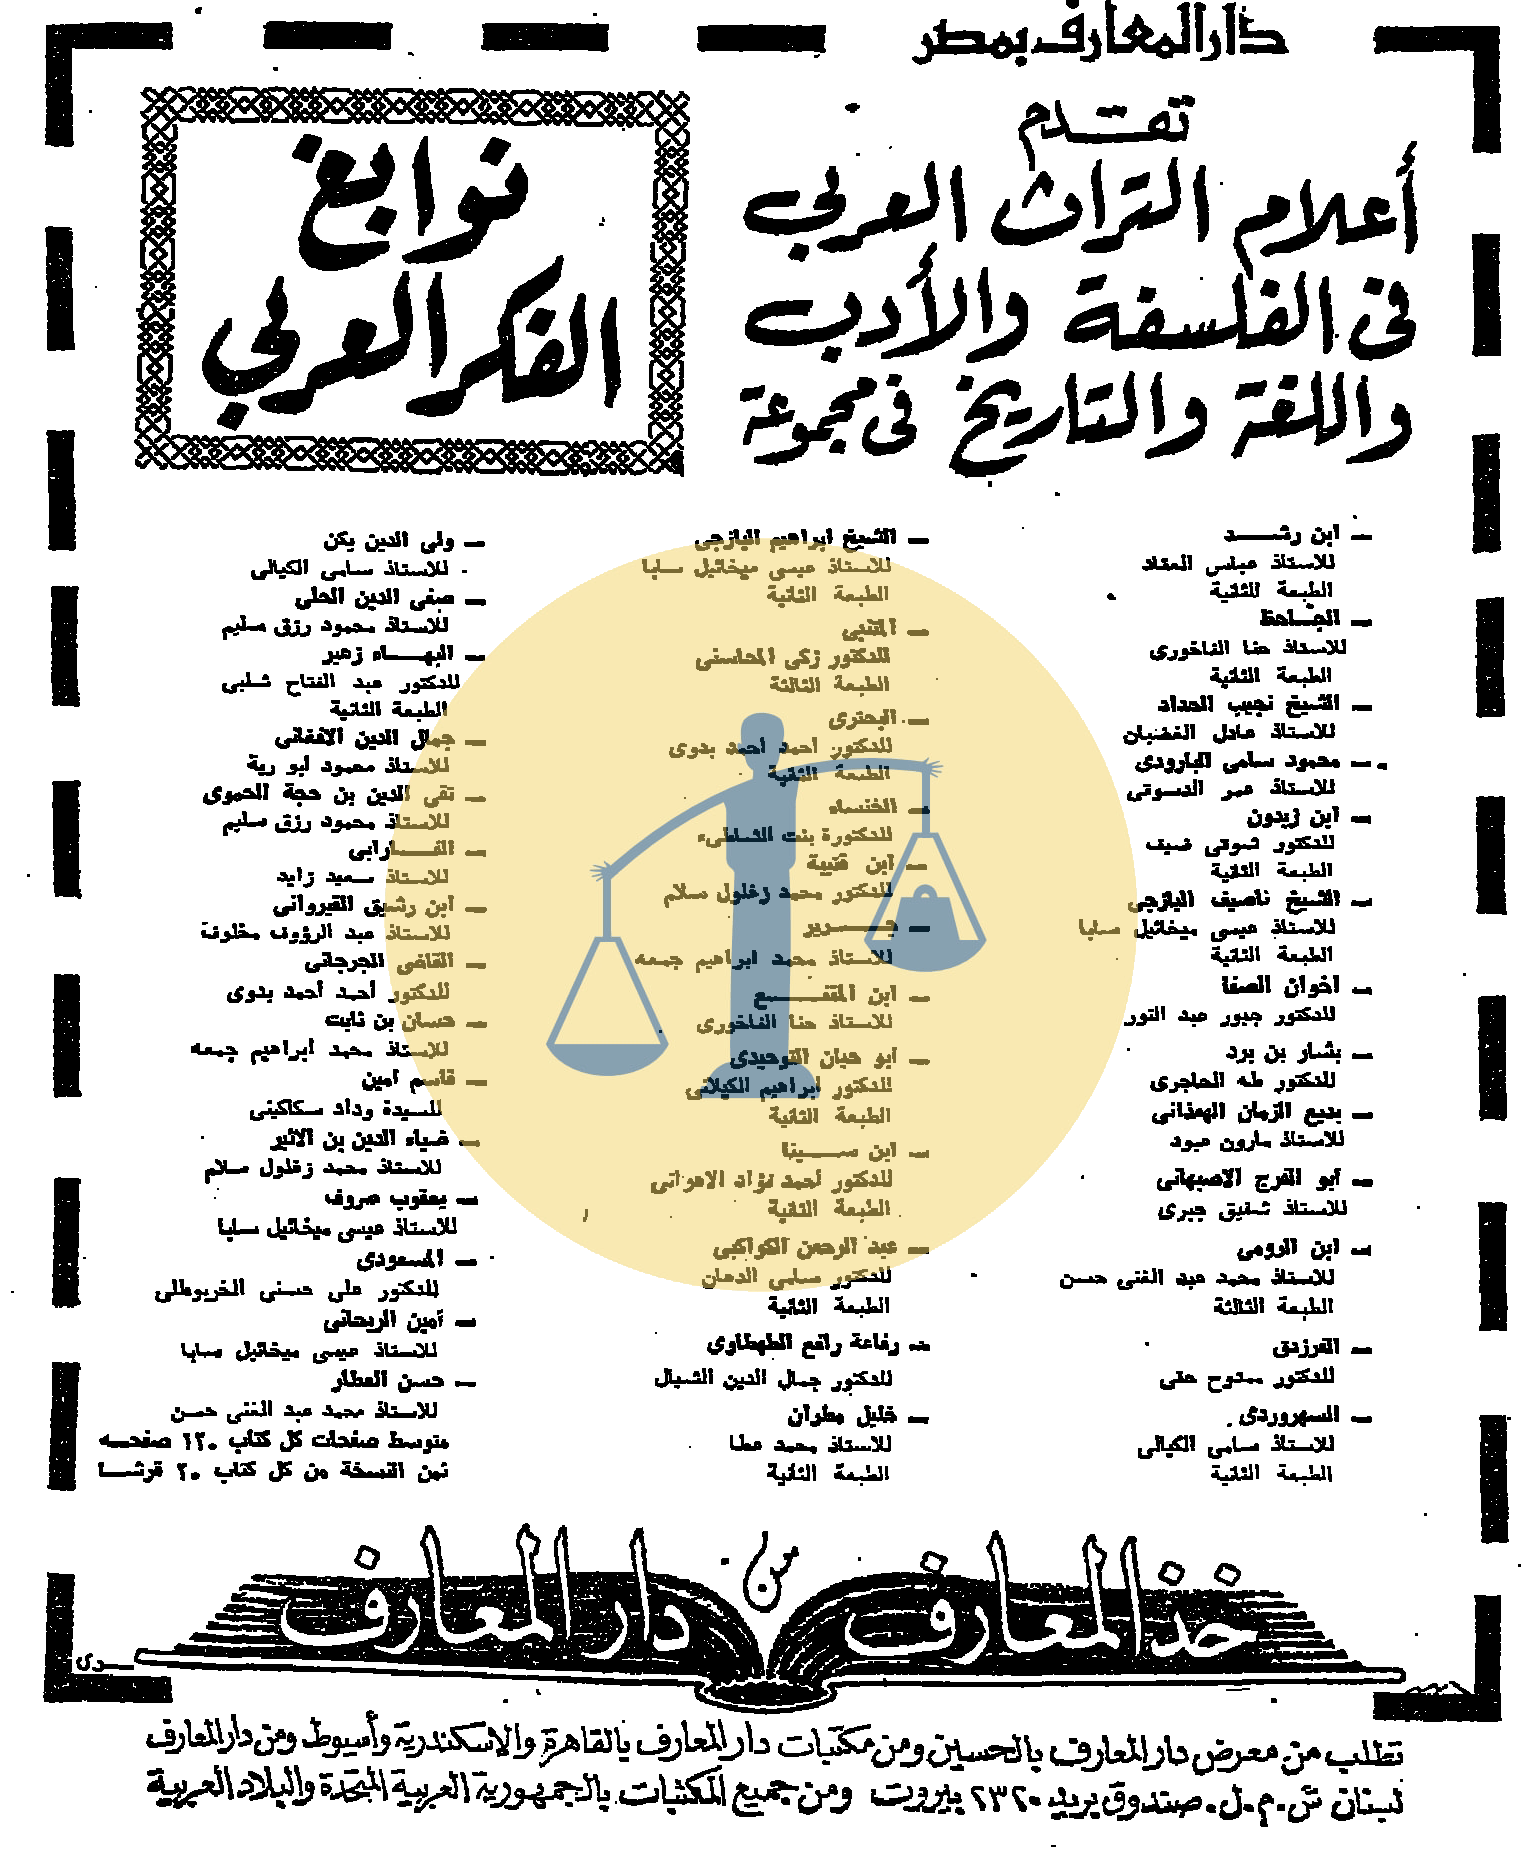 إعلان كتب الثلاثاء 15 رمضان 1389 هجري الموافق 24 نوفمبر 1969 م